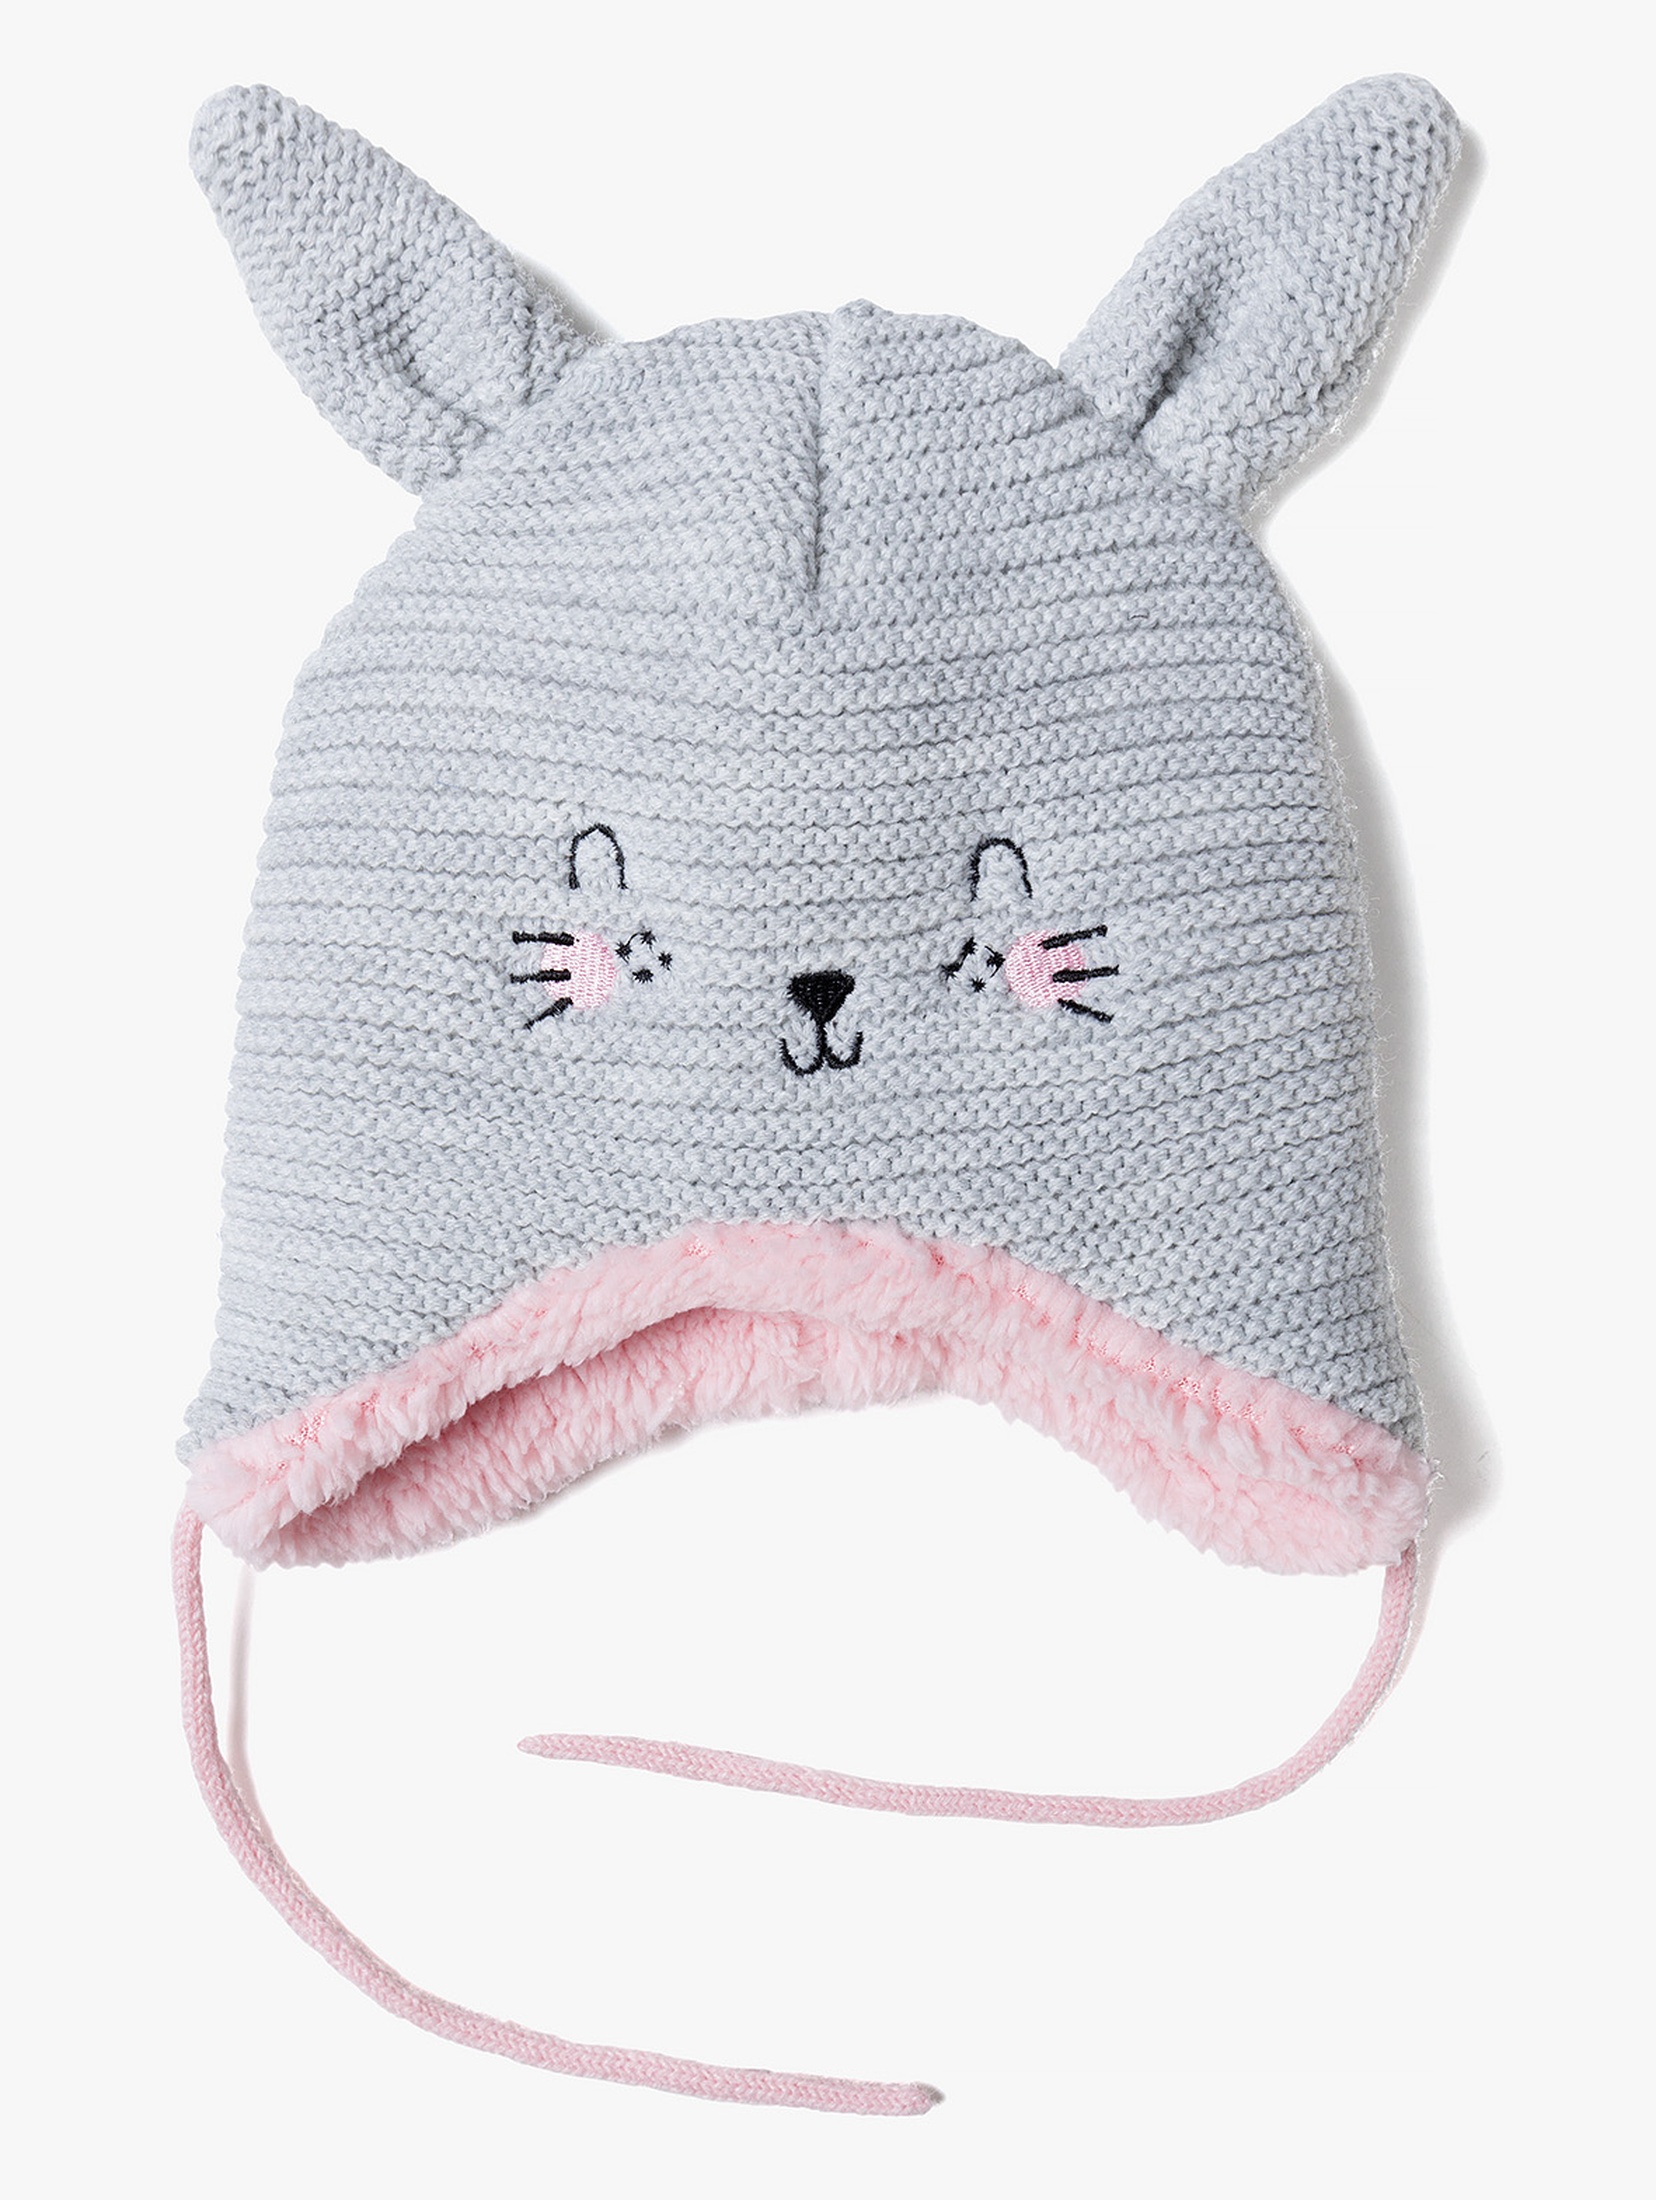 Ciepła zimowa czapka dla niemowlaka- szara z uszami